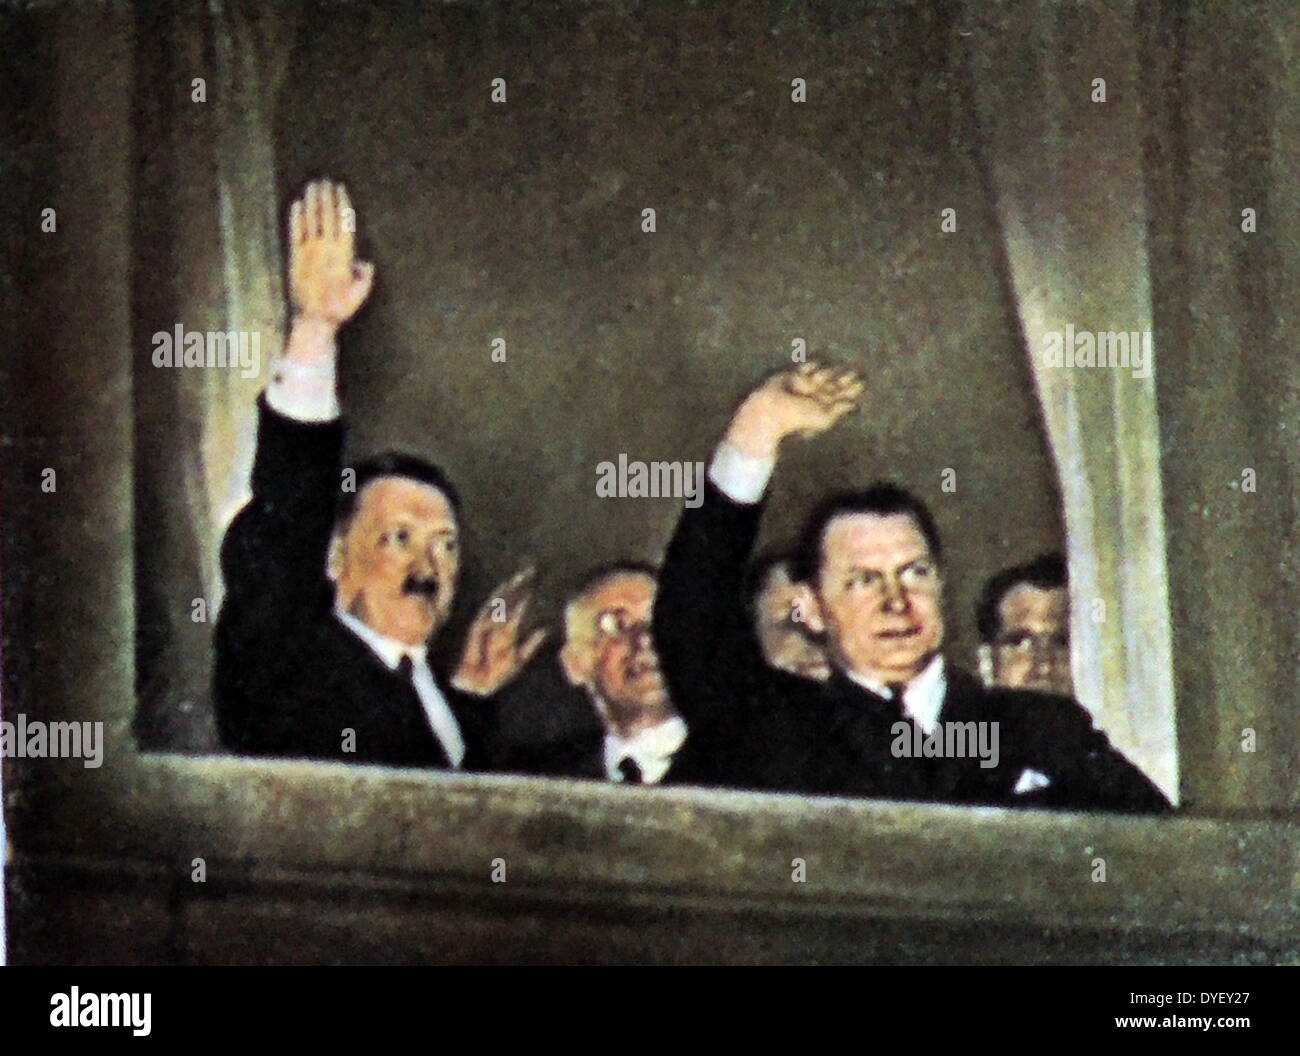 Herman Goring rechts und links Adolf Hitler Welle zu Anhänger aus einem Fenster im Büro des Reichs Kanzler nachdem Hitler 1933 Deutscher Reichskanzler ernannt wurde. Rudolf Hess später Hitlers Stellvertreter ist ganz rechts dargestellt. Stockfoto